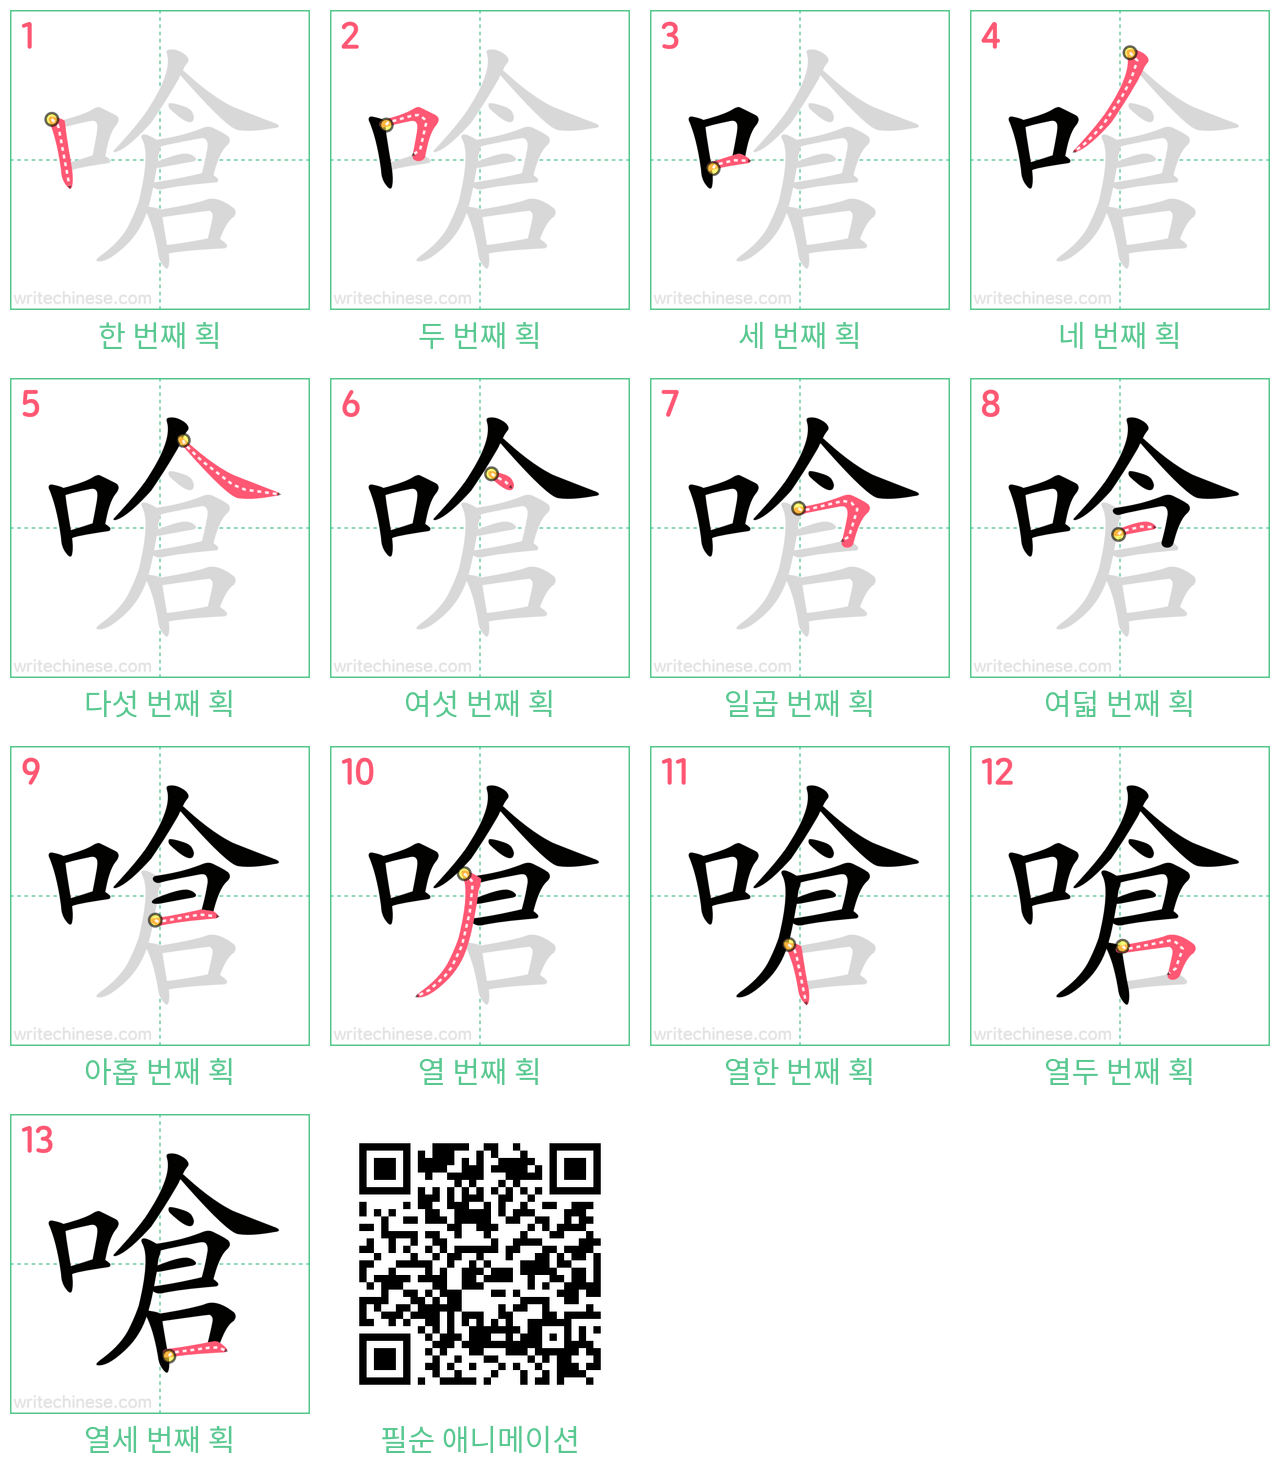 嗆 step-by-step stroke order diagrams